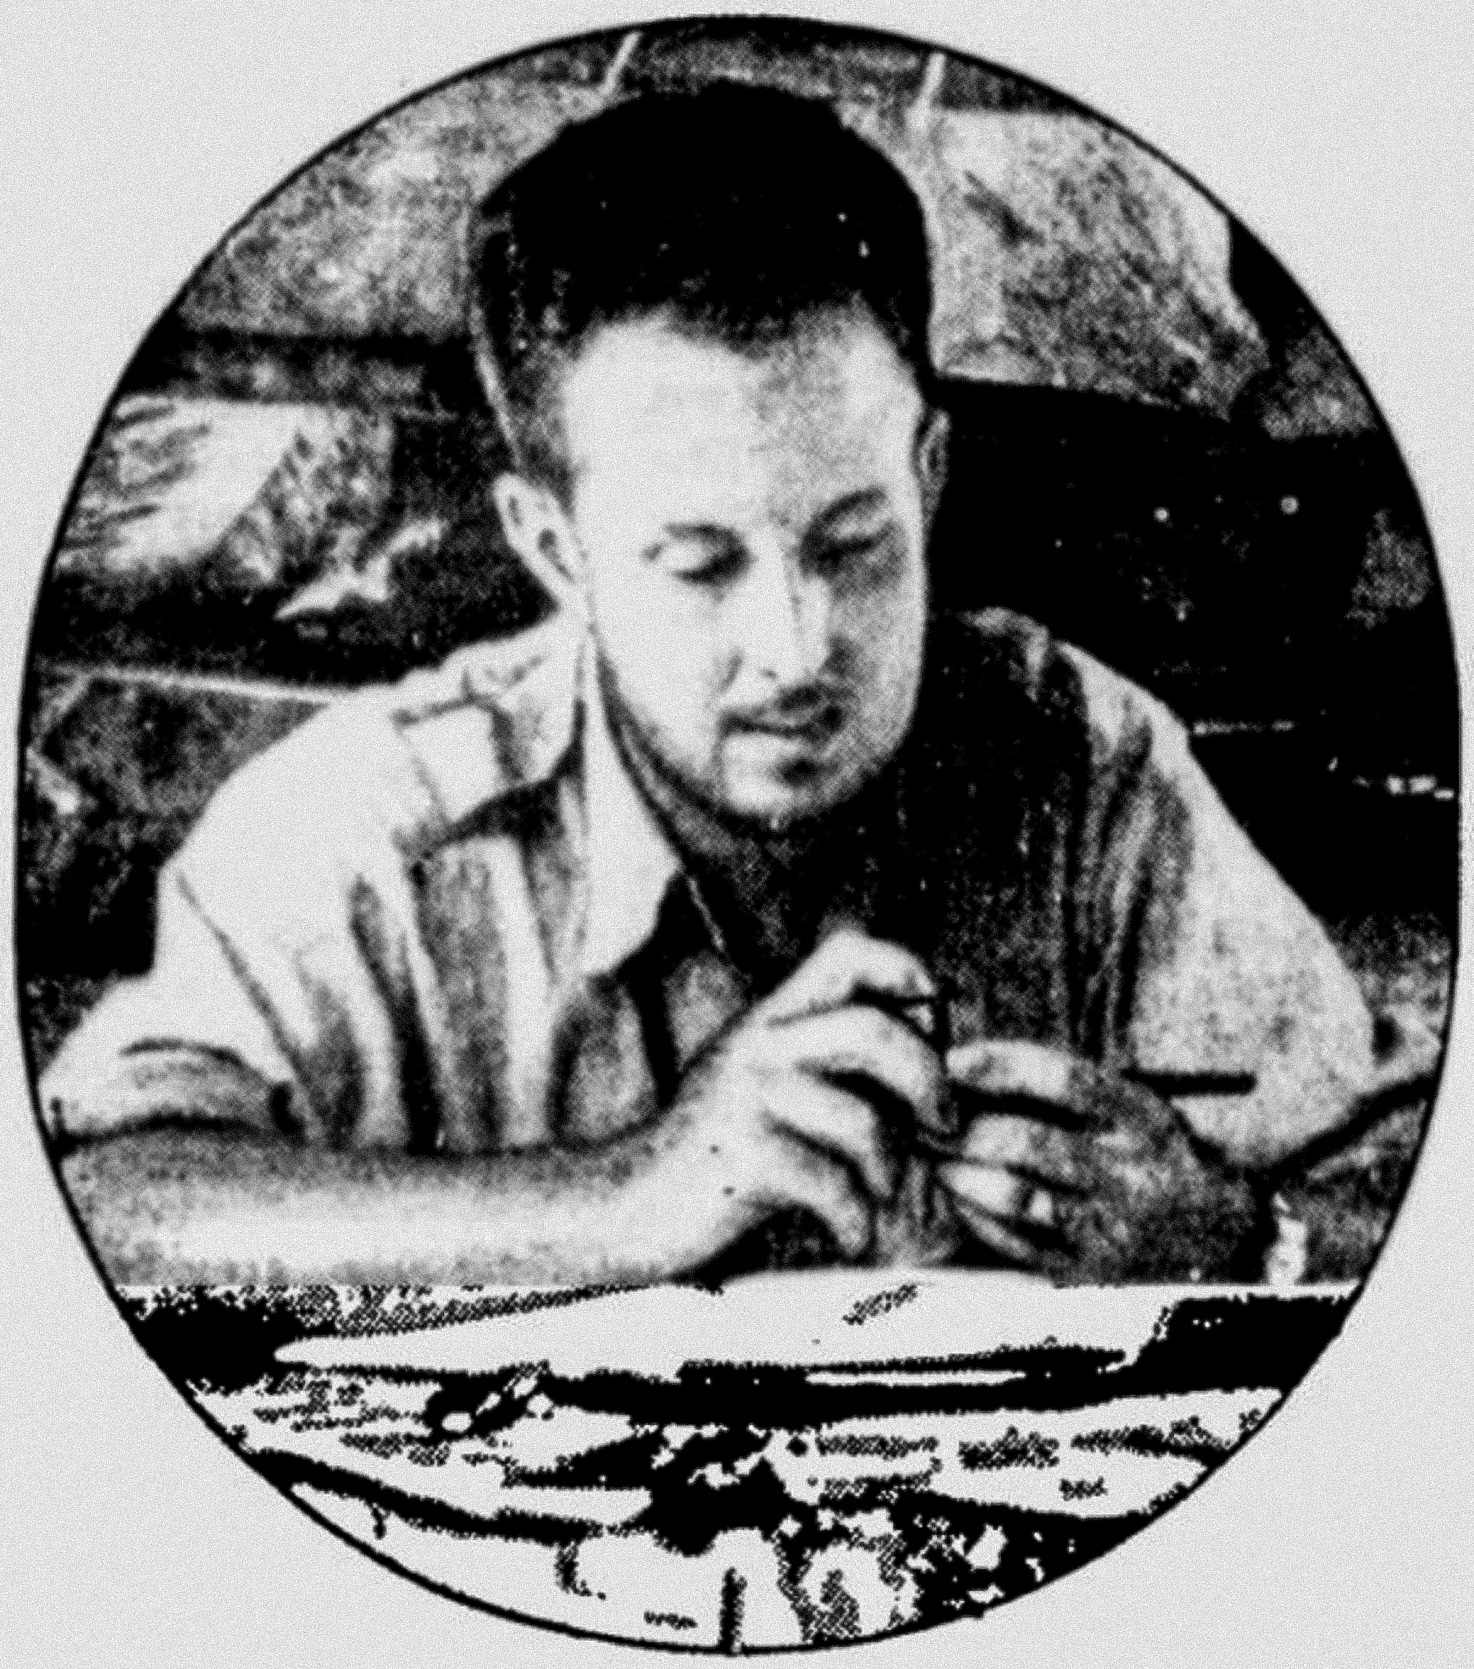 امریکی ایکسپلورر تھیوڈور مورڈ 1940 میں لا موسکیٹیا کی تلاش کے دوران ہونڈوران کے برساتی جنگل میں اپنی میز پر بیٹھے ہوئے تھے۔